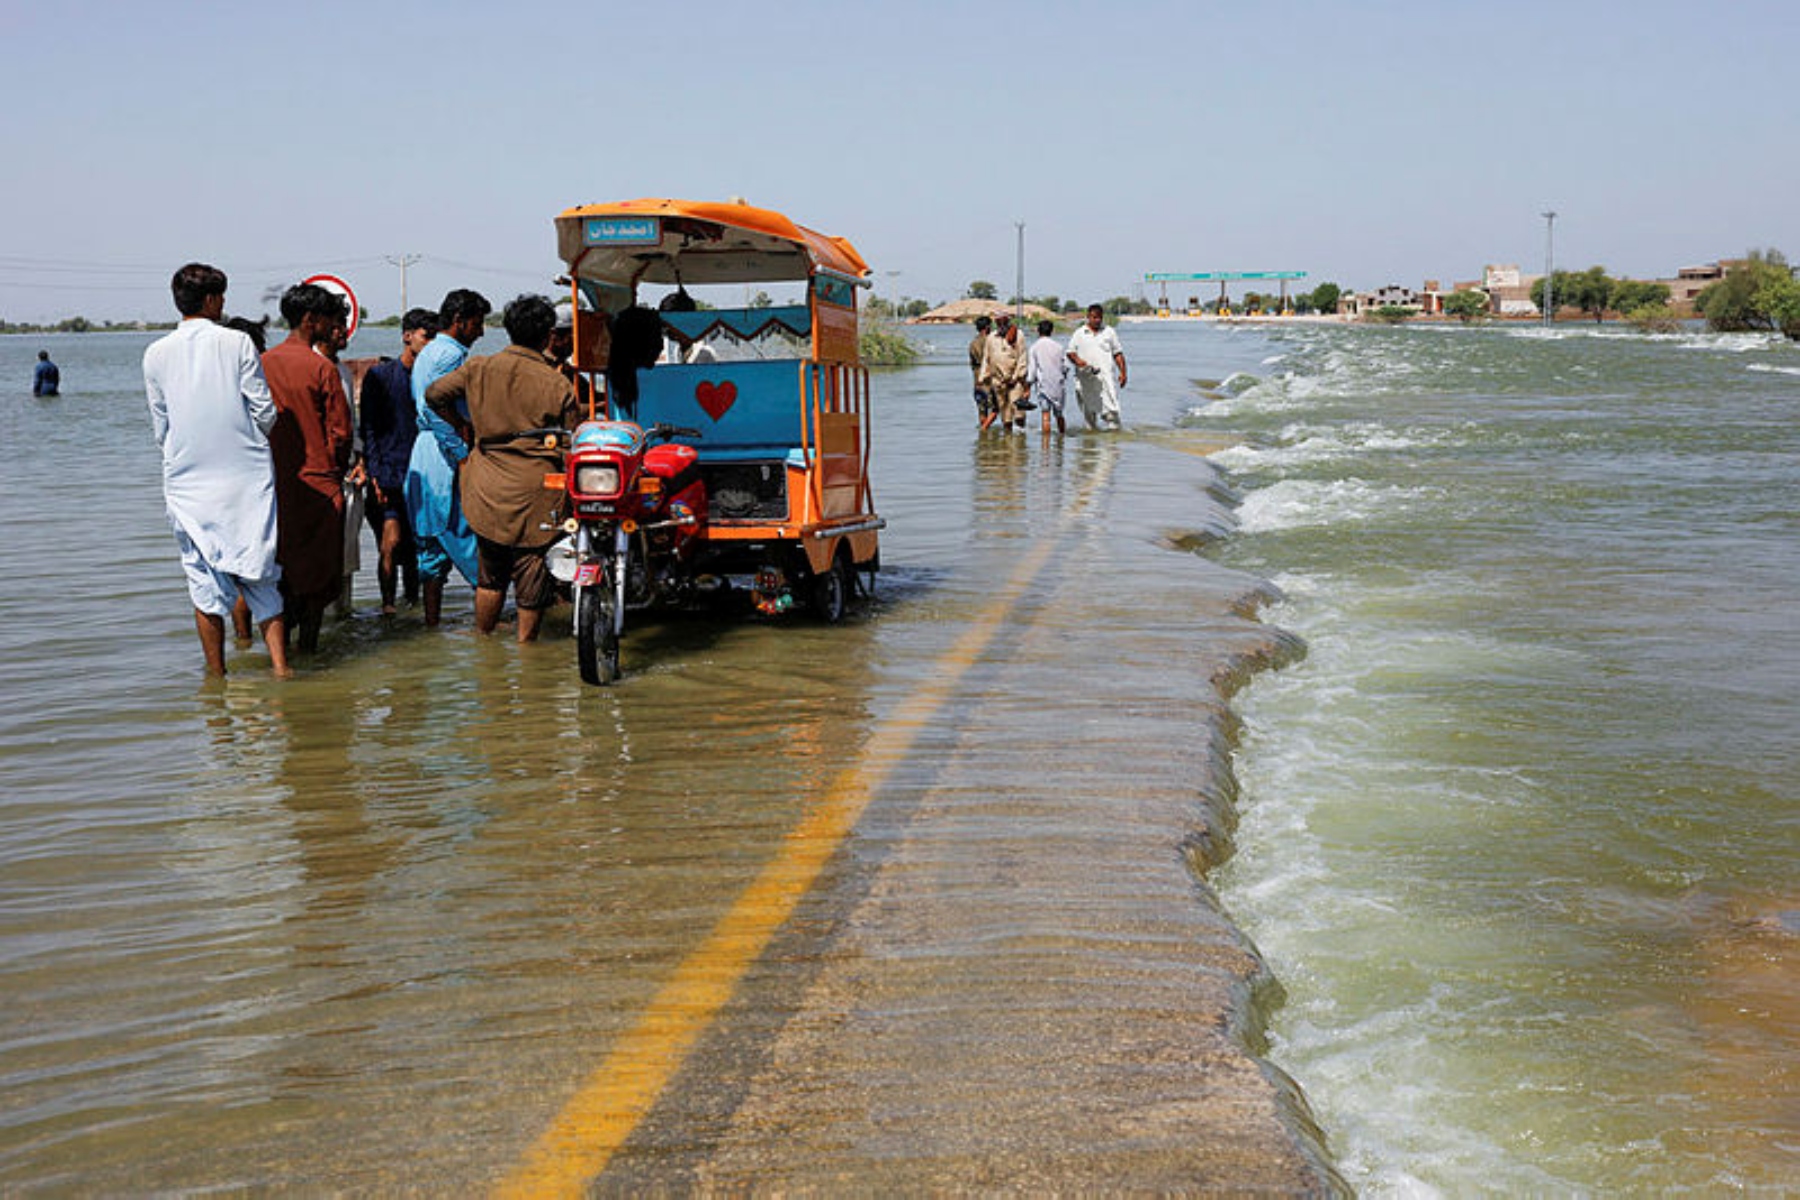 Πακιστάν ΠΟΥ: Συναγερμός για ασθένειες σε περιοχές που επλήγησαν από πλημμύρες